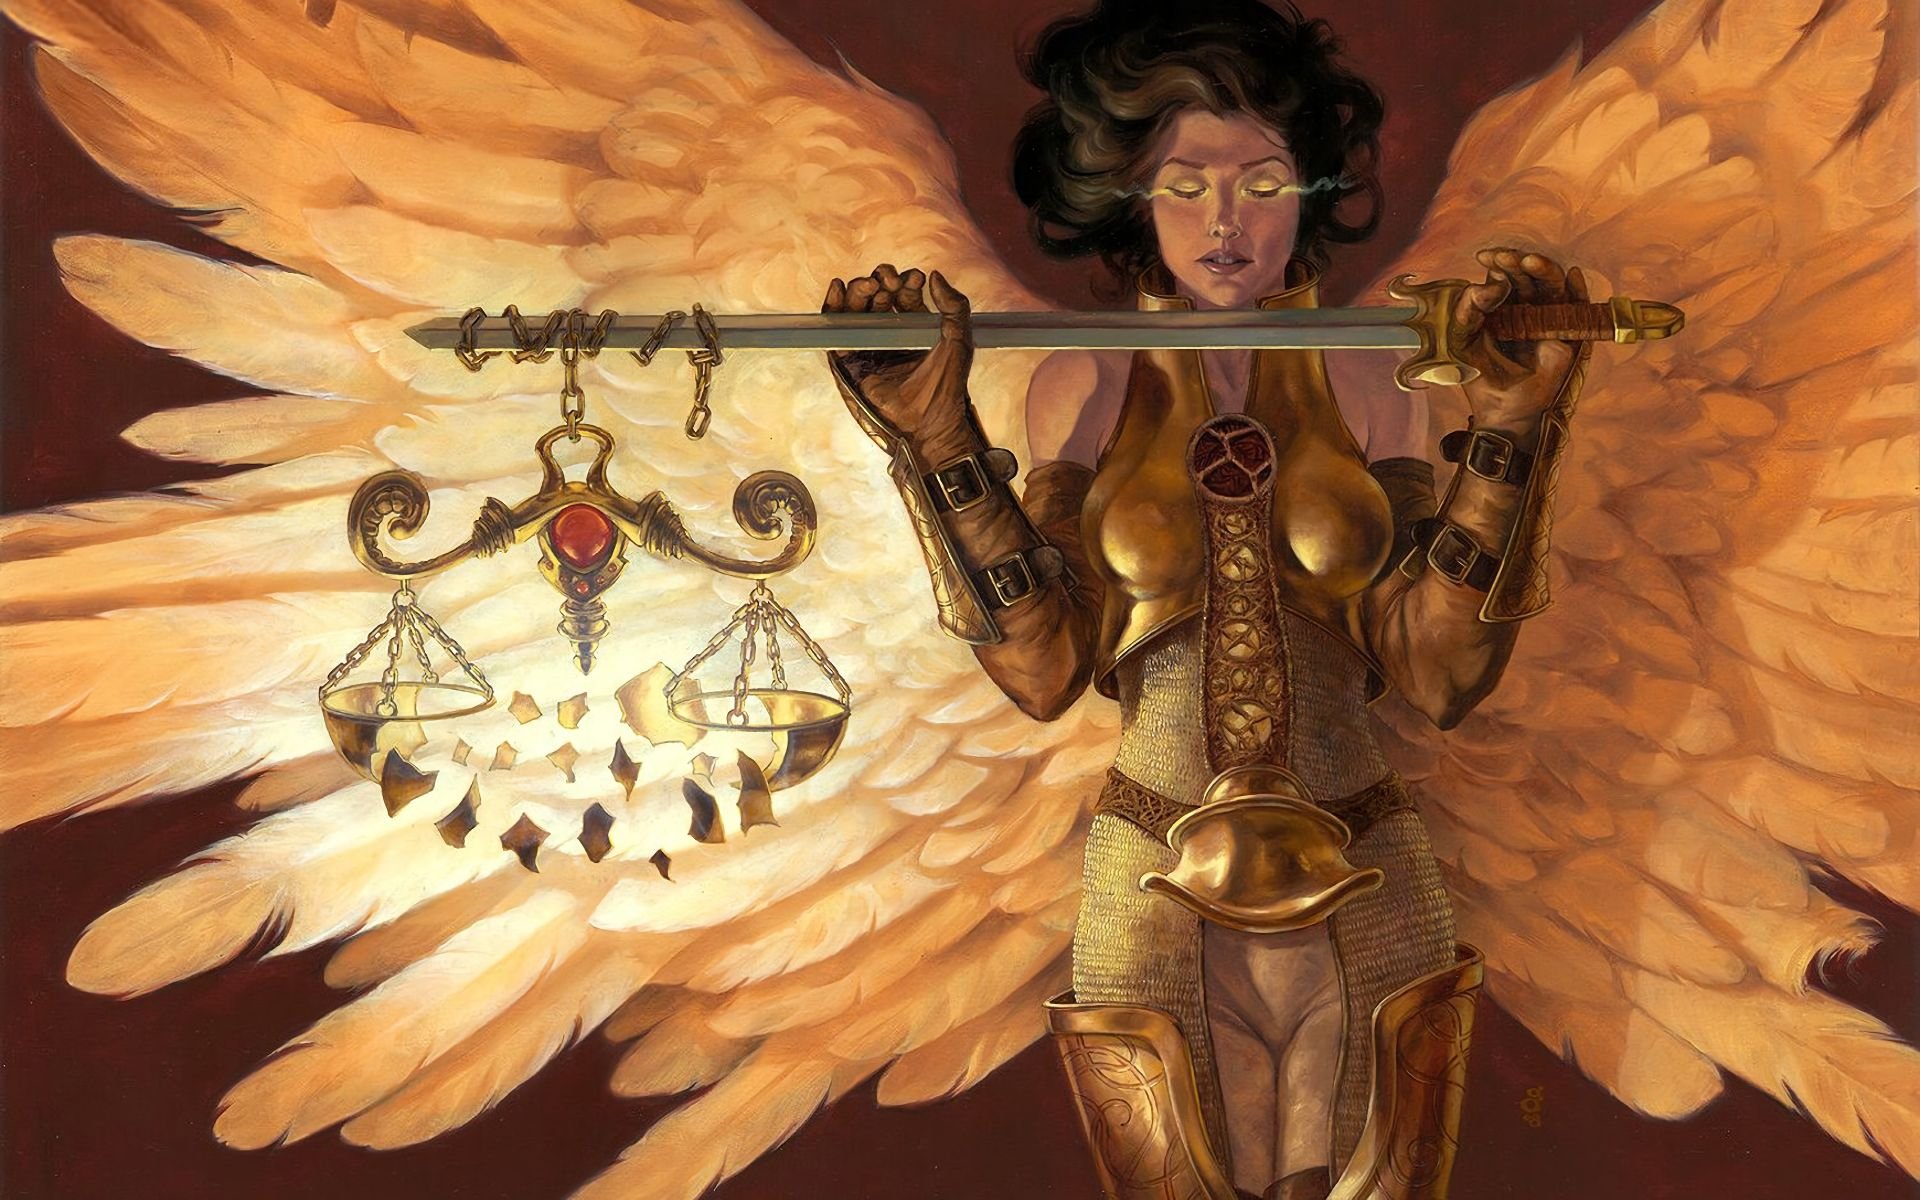 Кармический хвост воин. Ангел-судья МТГ. Астрея богиня. Фемида богиня правосудия фэнтези. Астрея богиня справедливости.